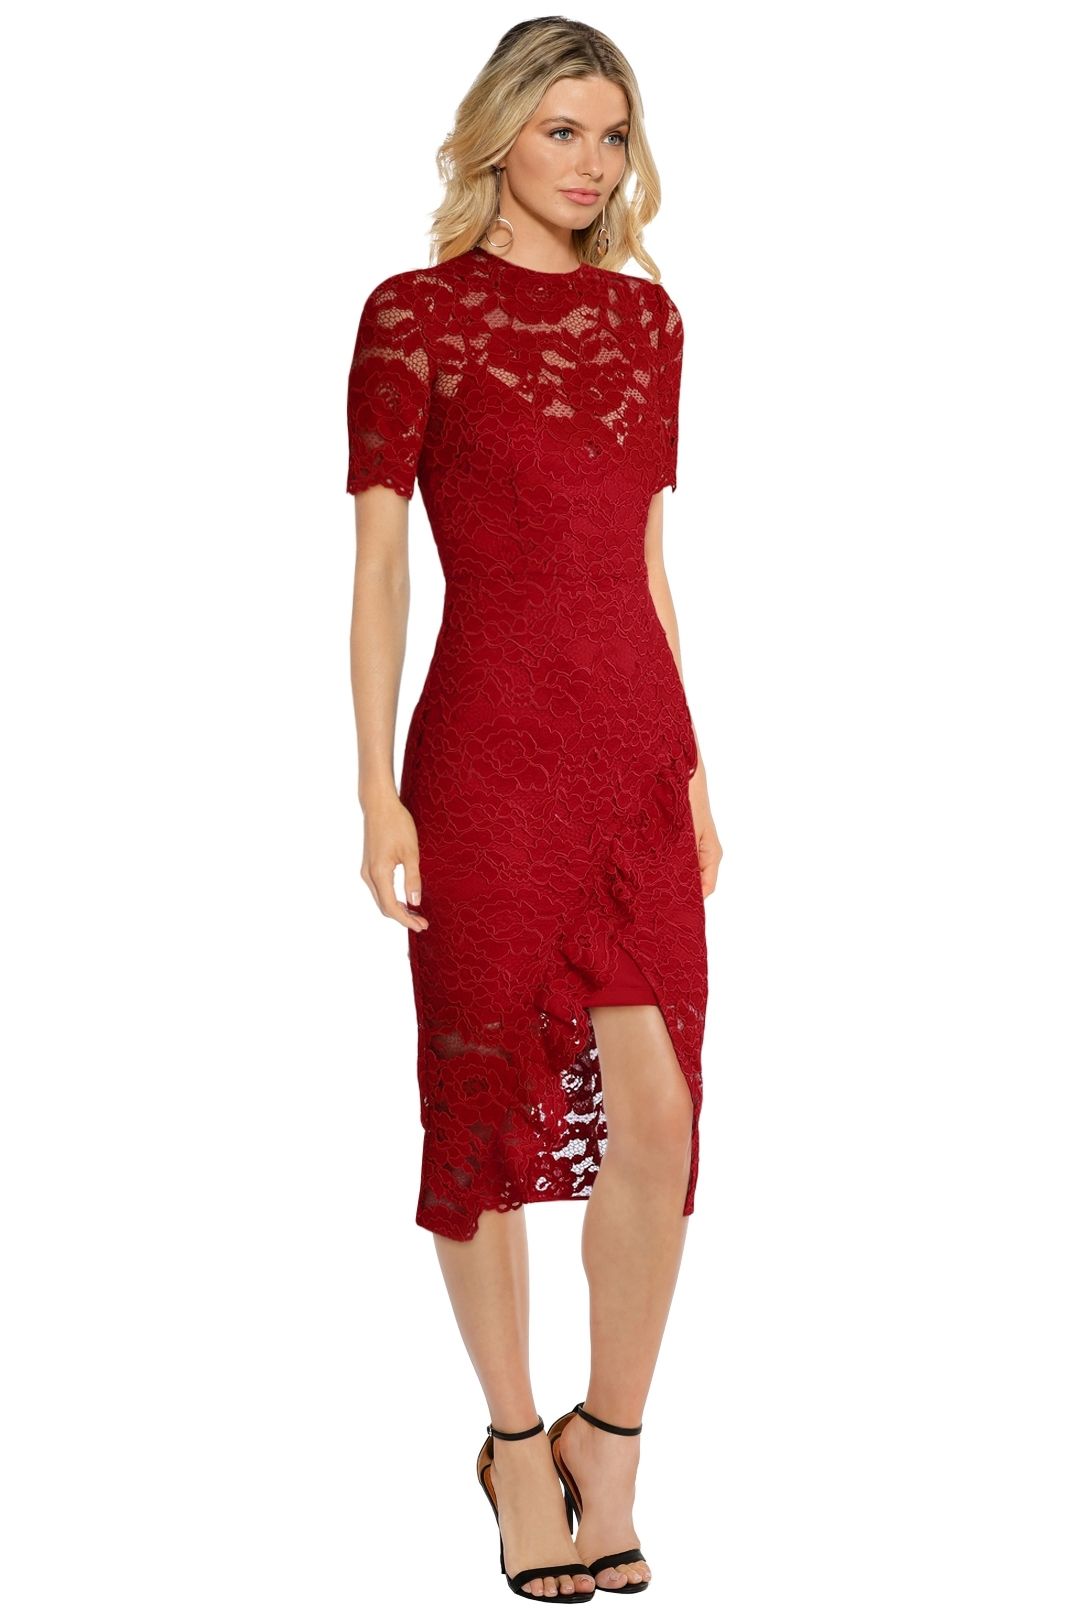 Yeojin Bae - Cornelli Lace Alyssa Dress - Red - Side